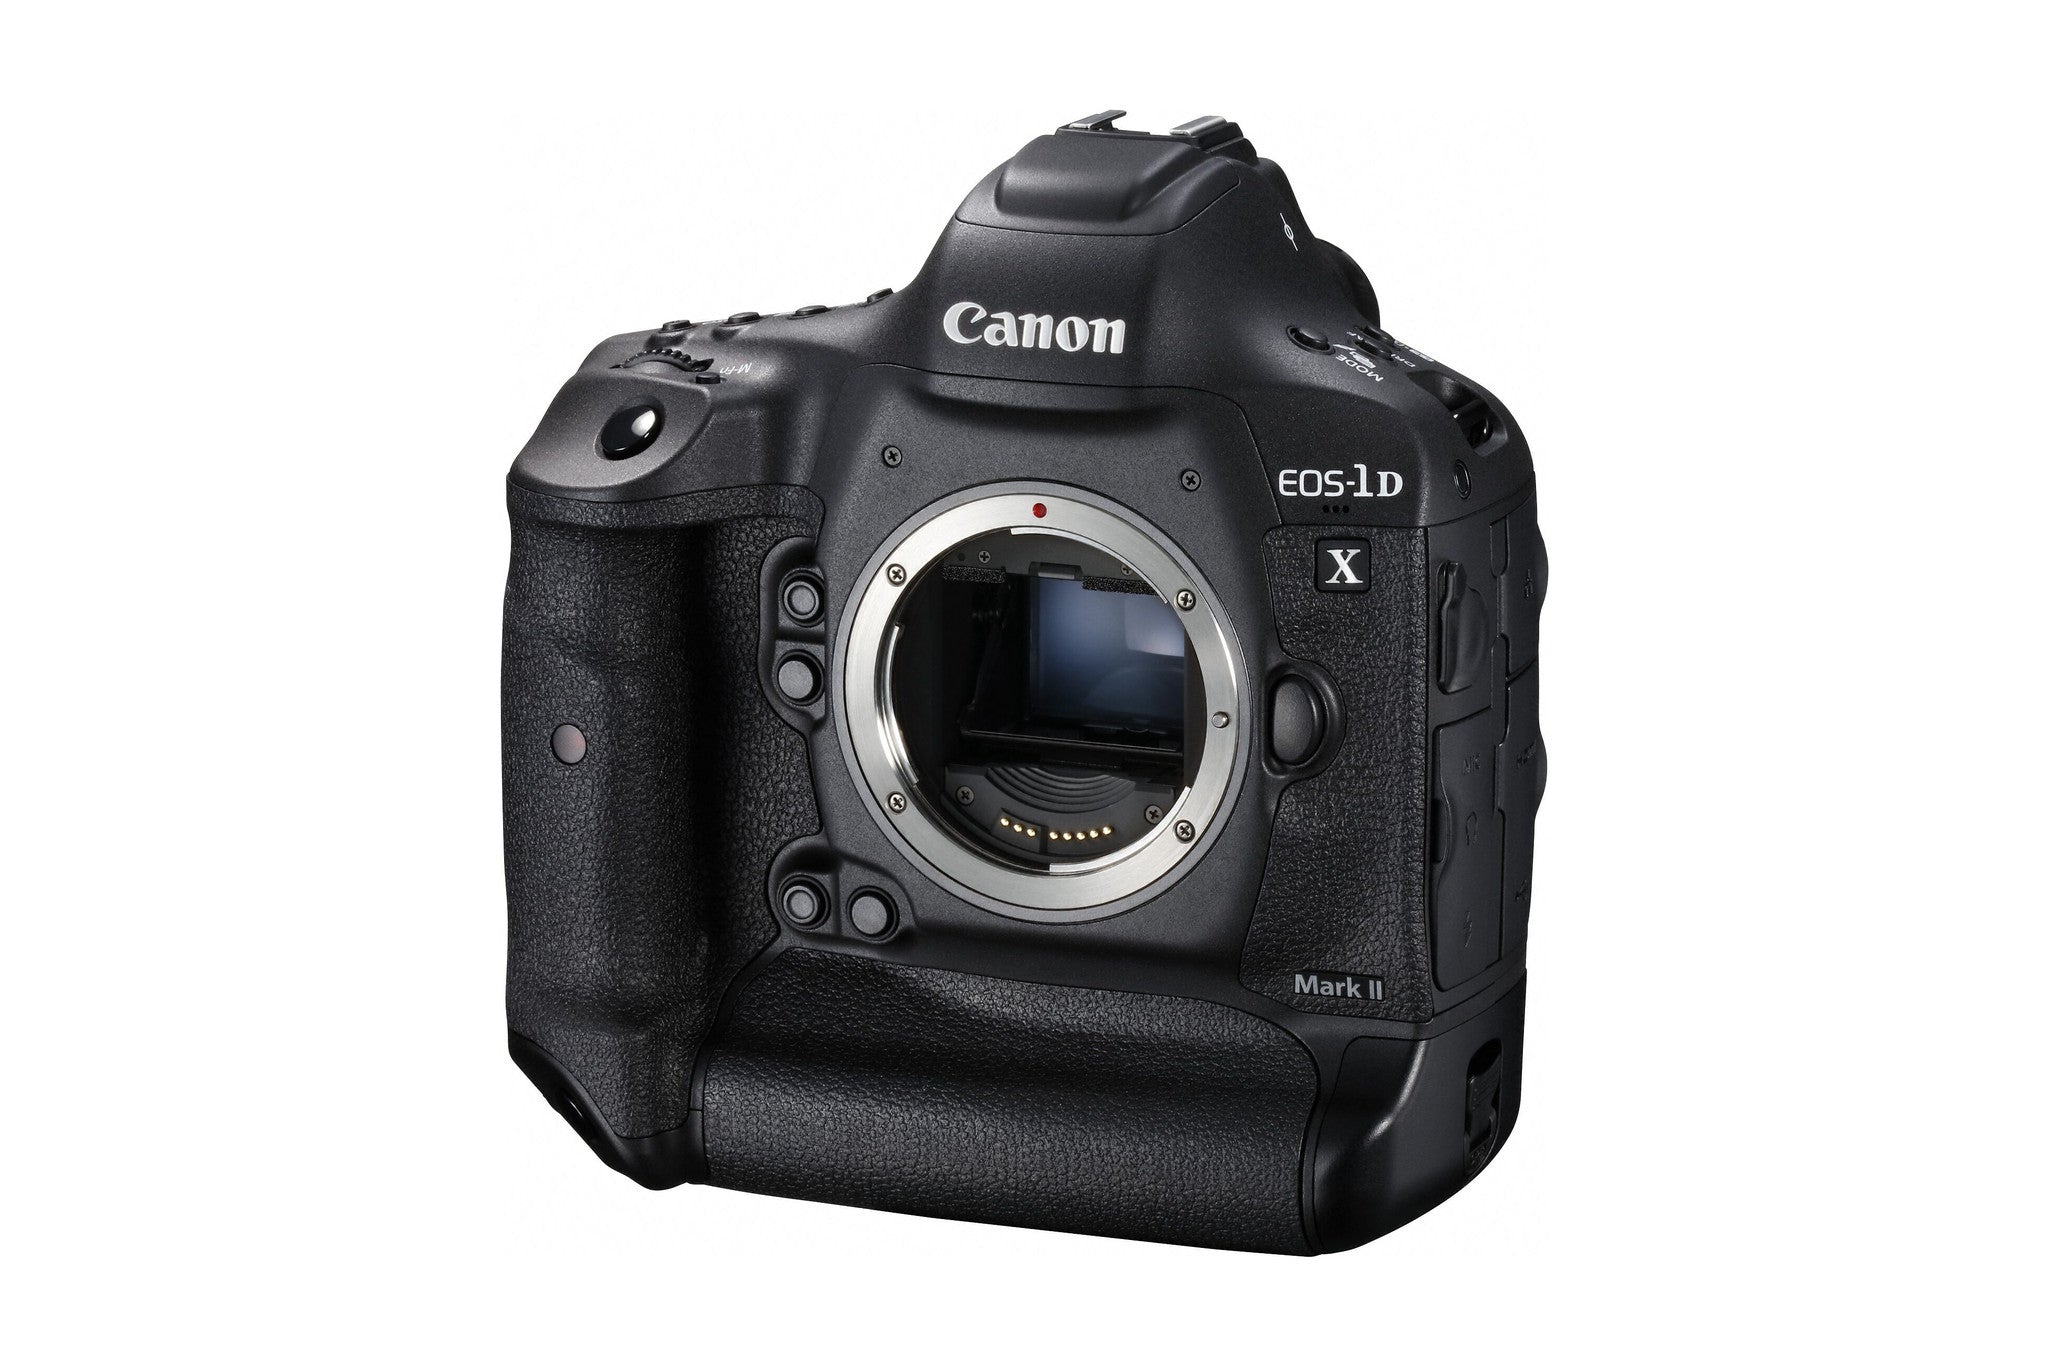 Canon EOS 1D X Mark II Digital Camera Body, camera dslr cameras, Canon - Pictureline  - 5